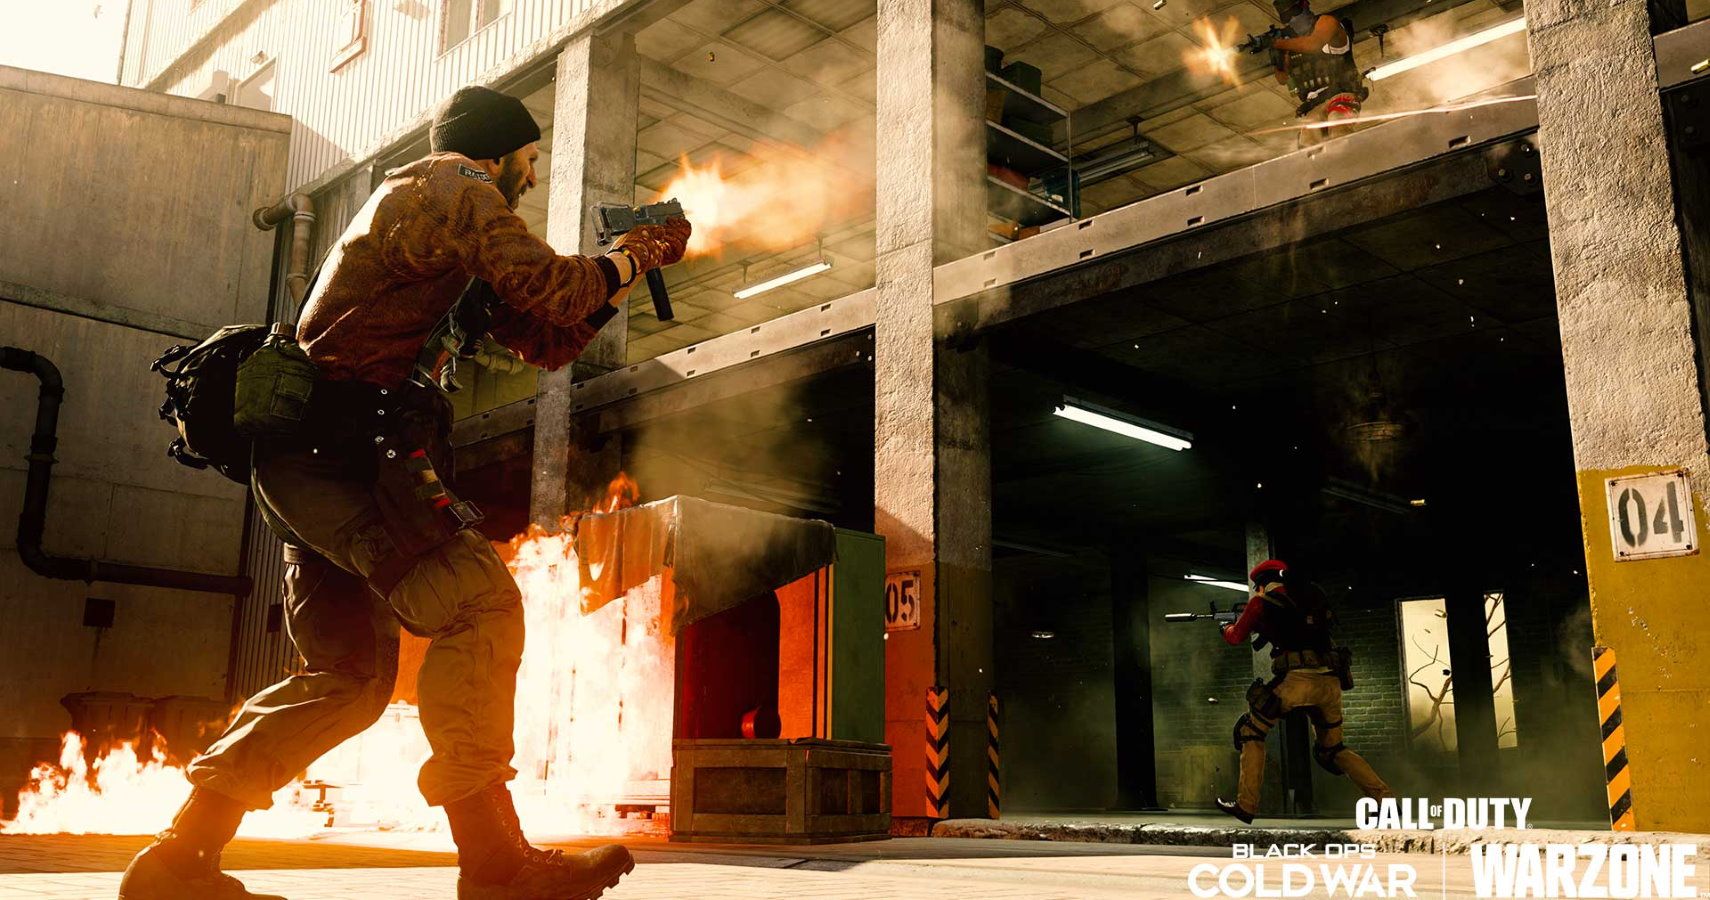 Rebirth Island ankommer med den seneste sæson i Call Of Duty Warzone